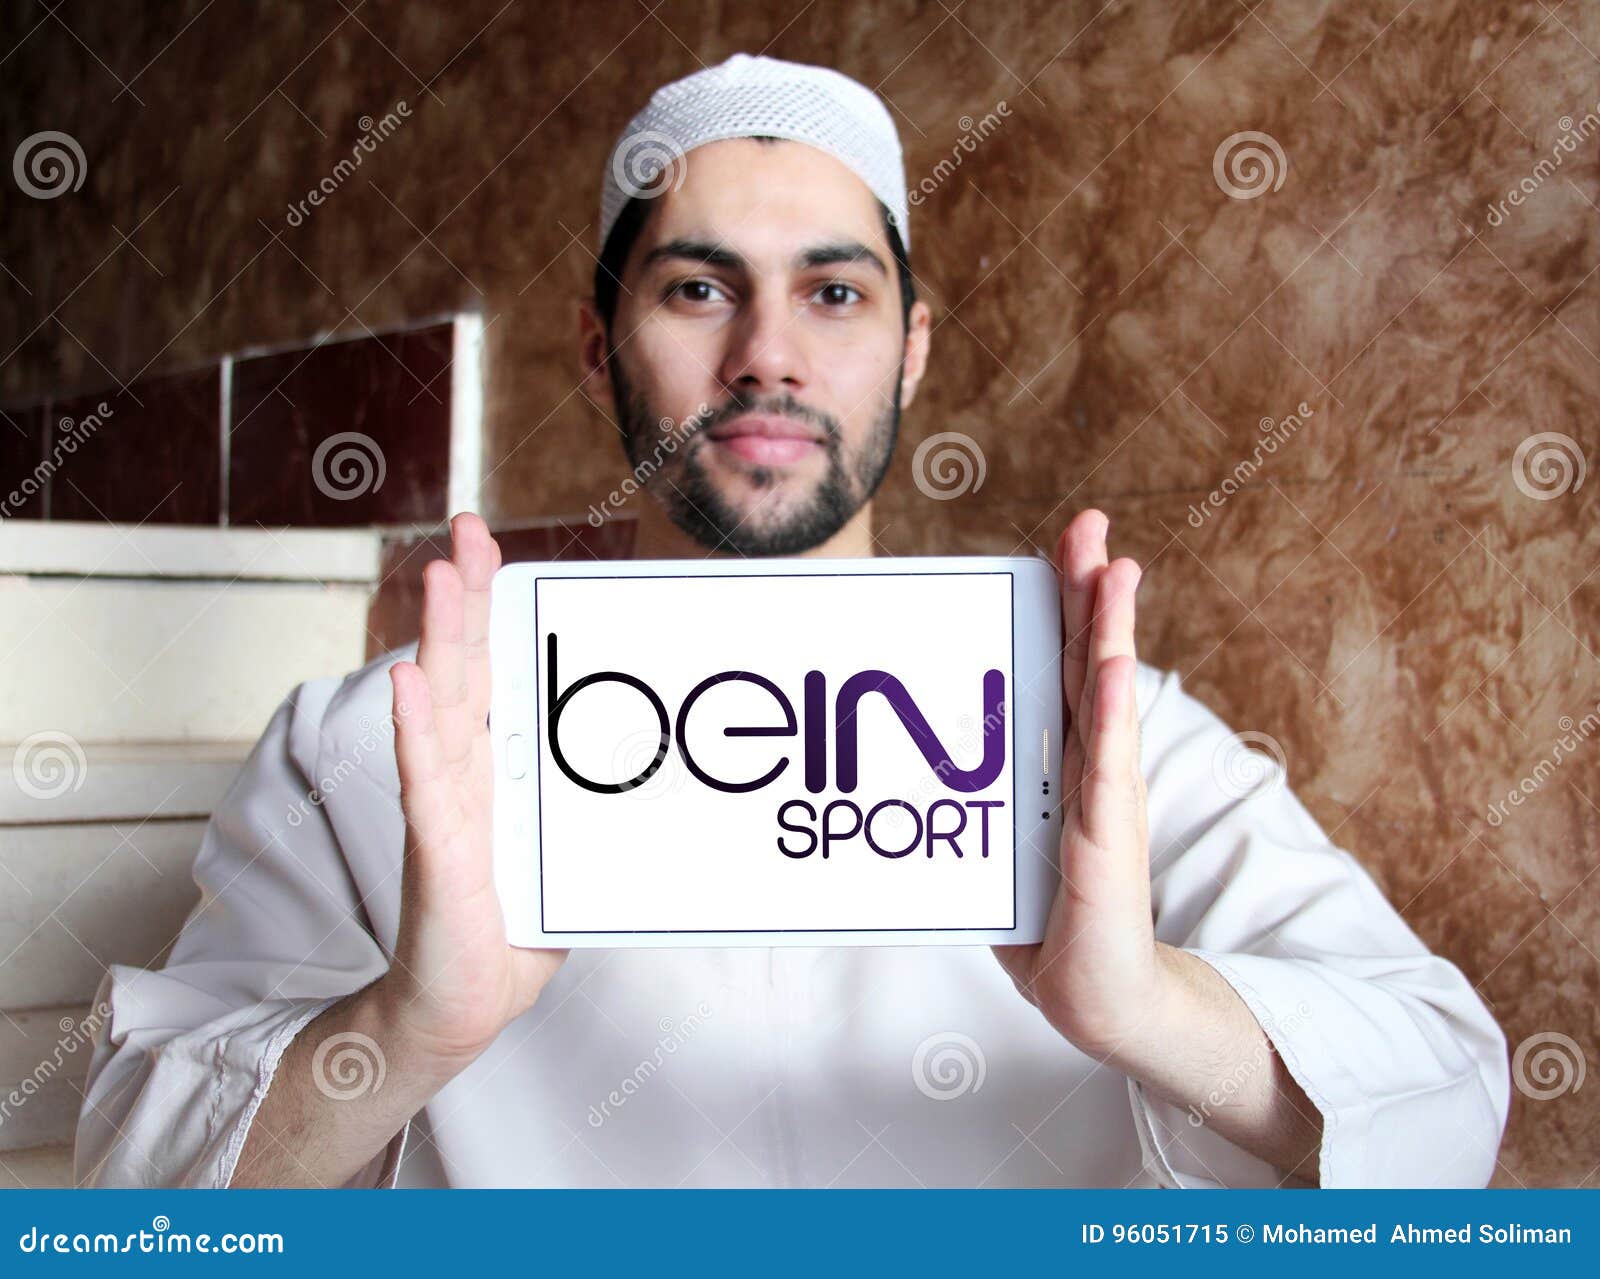 Bein sport logo editorial image